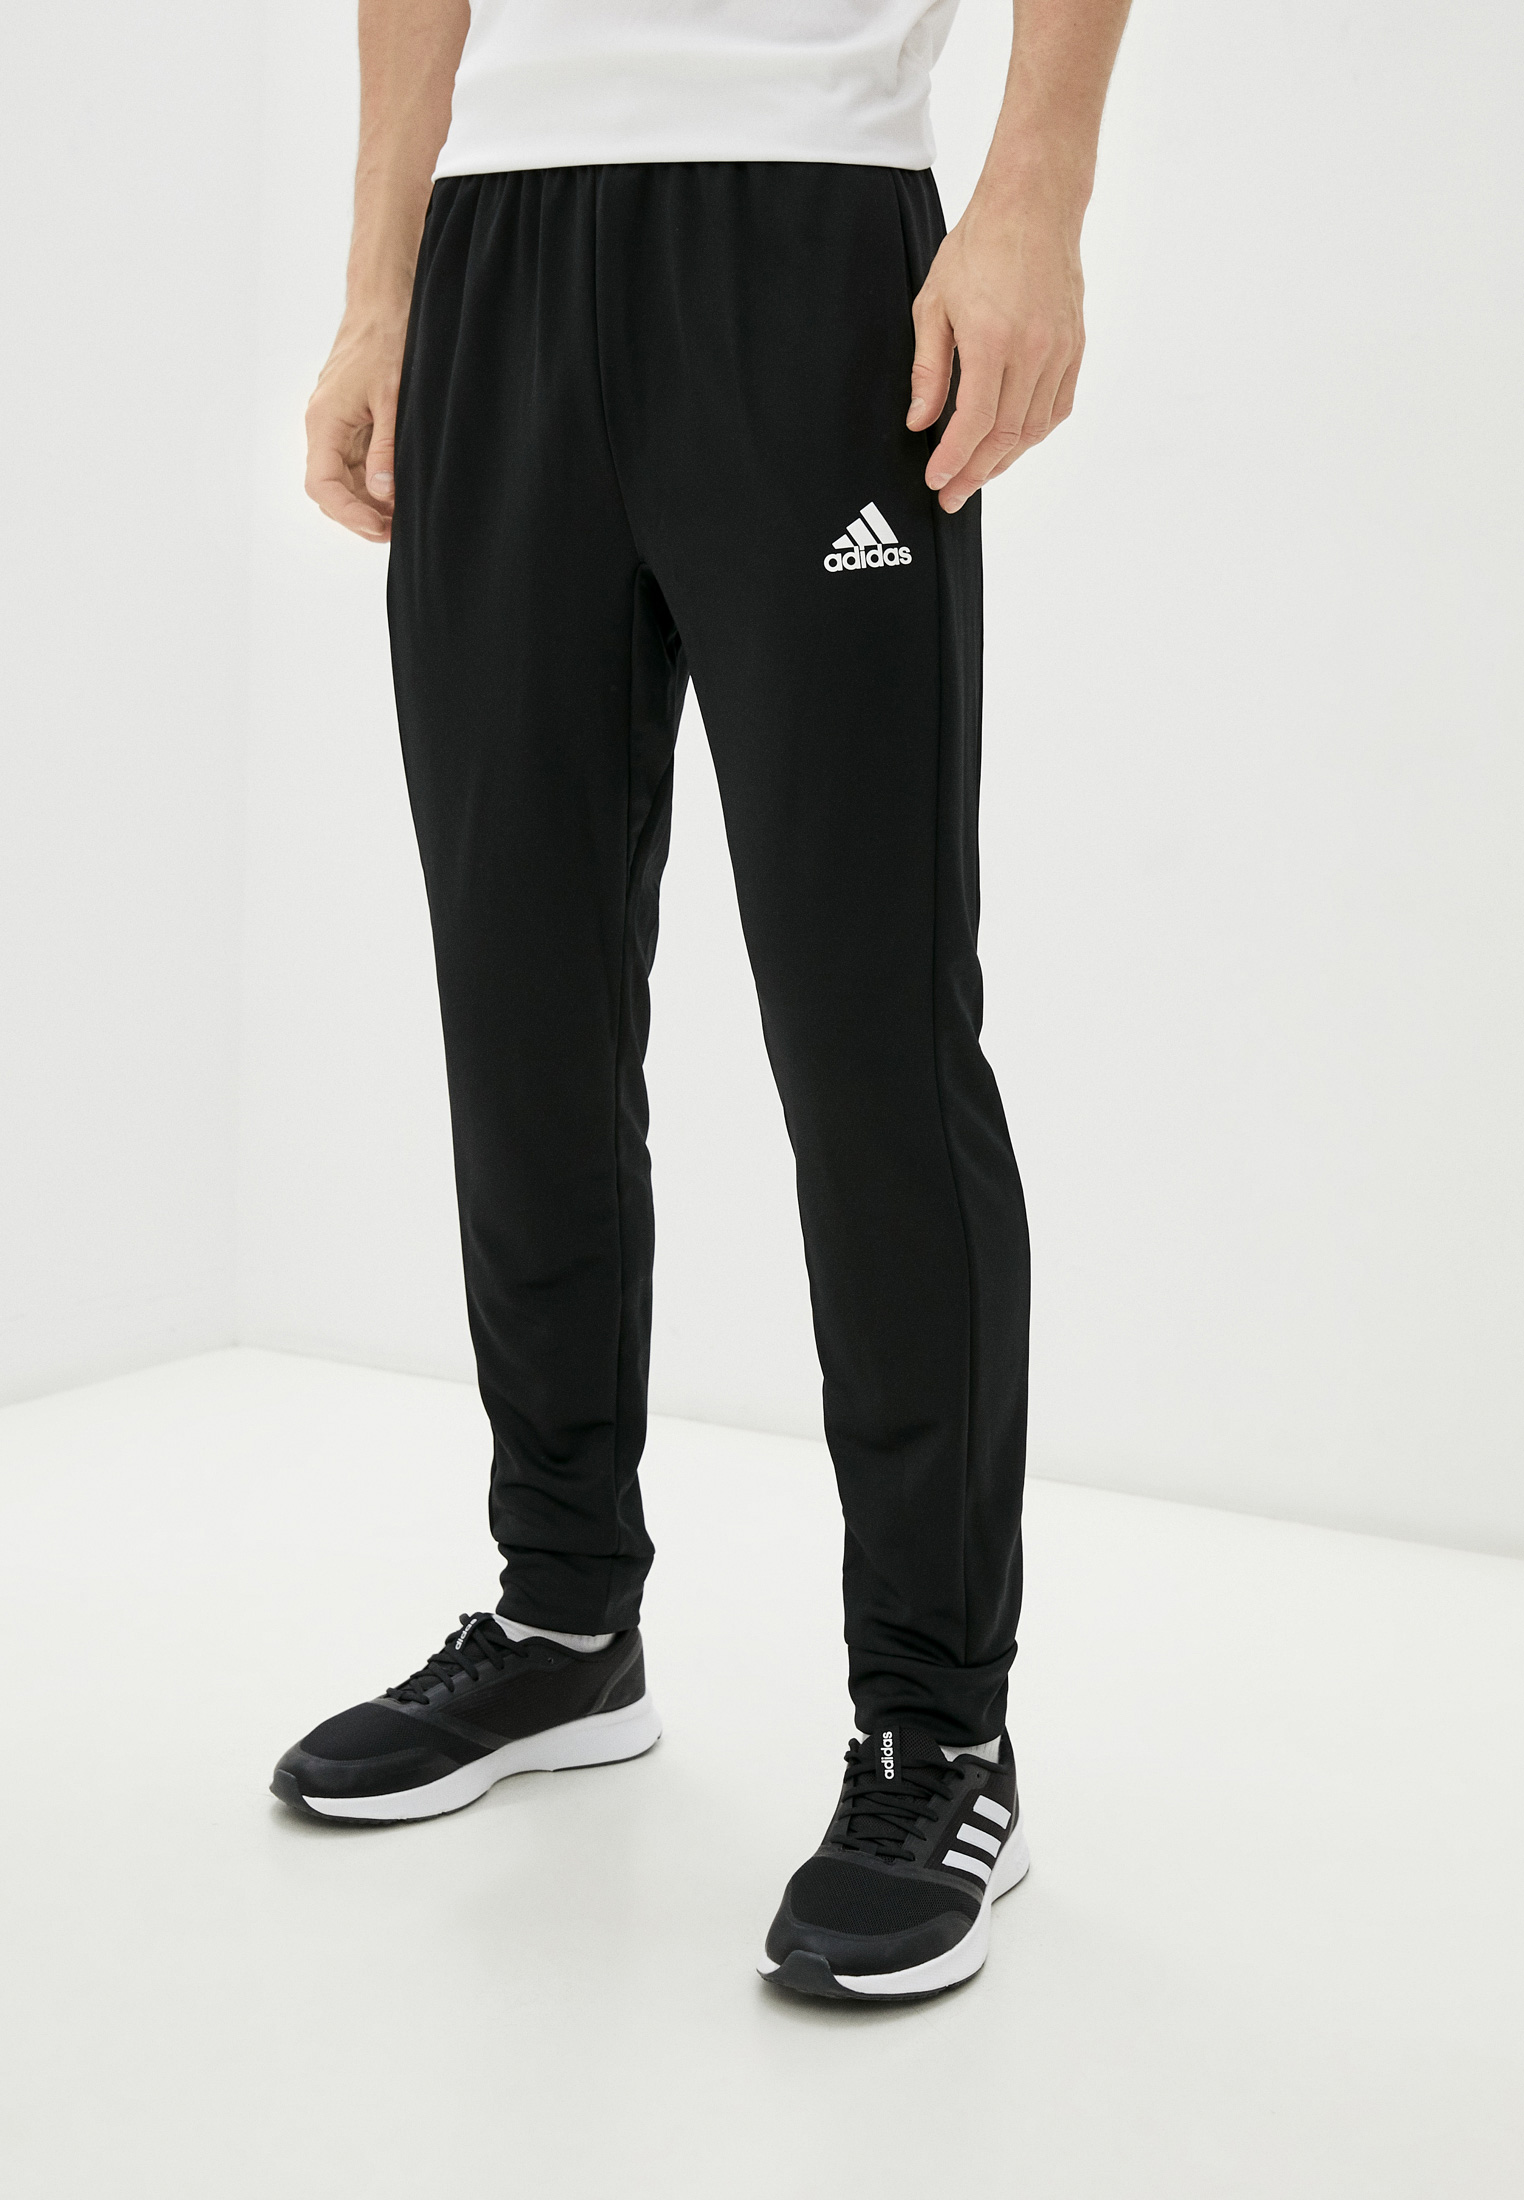 Брюки спортивные adidas M SL KT C T, цвет: черный, RTLAAJ951701 — купить в  интернет-магазине Lamoda